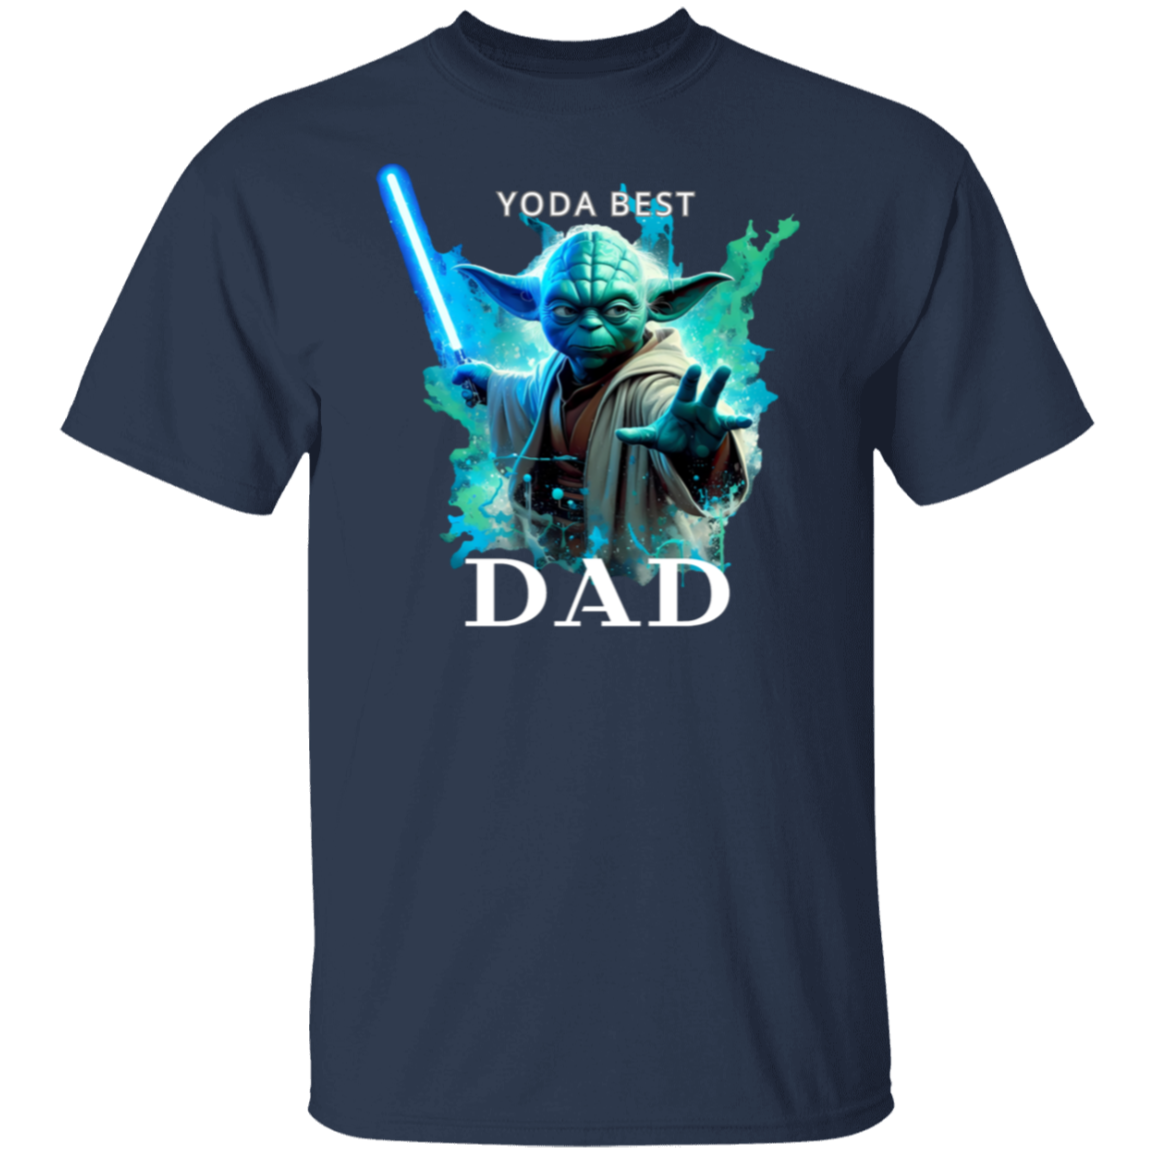 "Yoda" Best Dad Short Sleeve T-Shirt